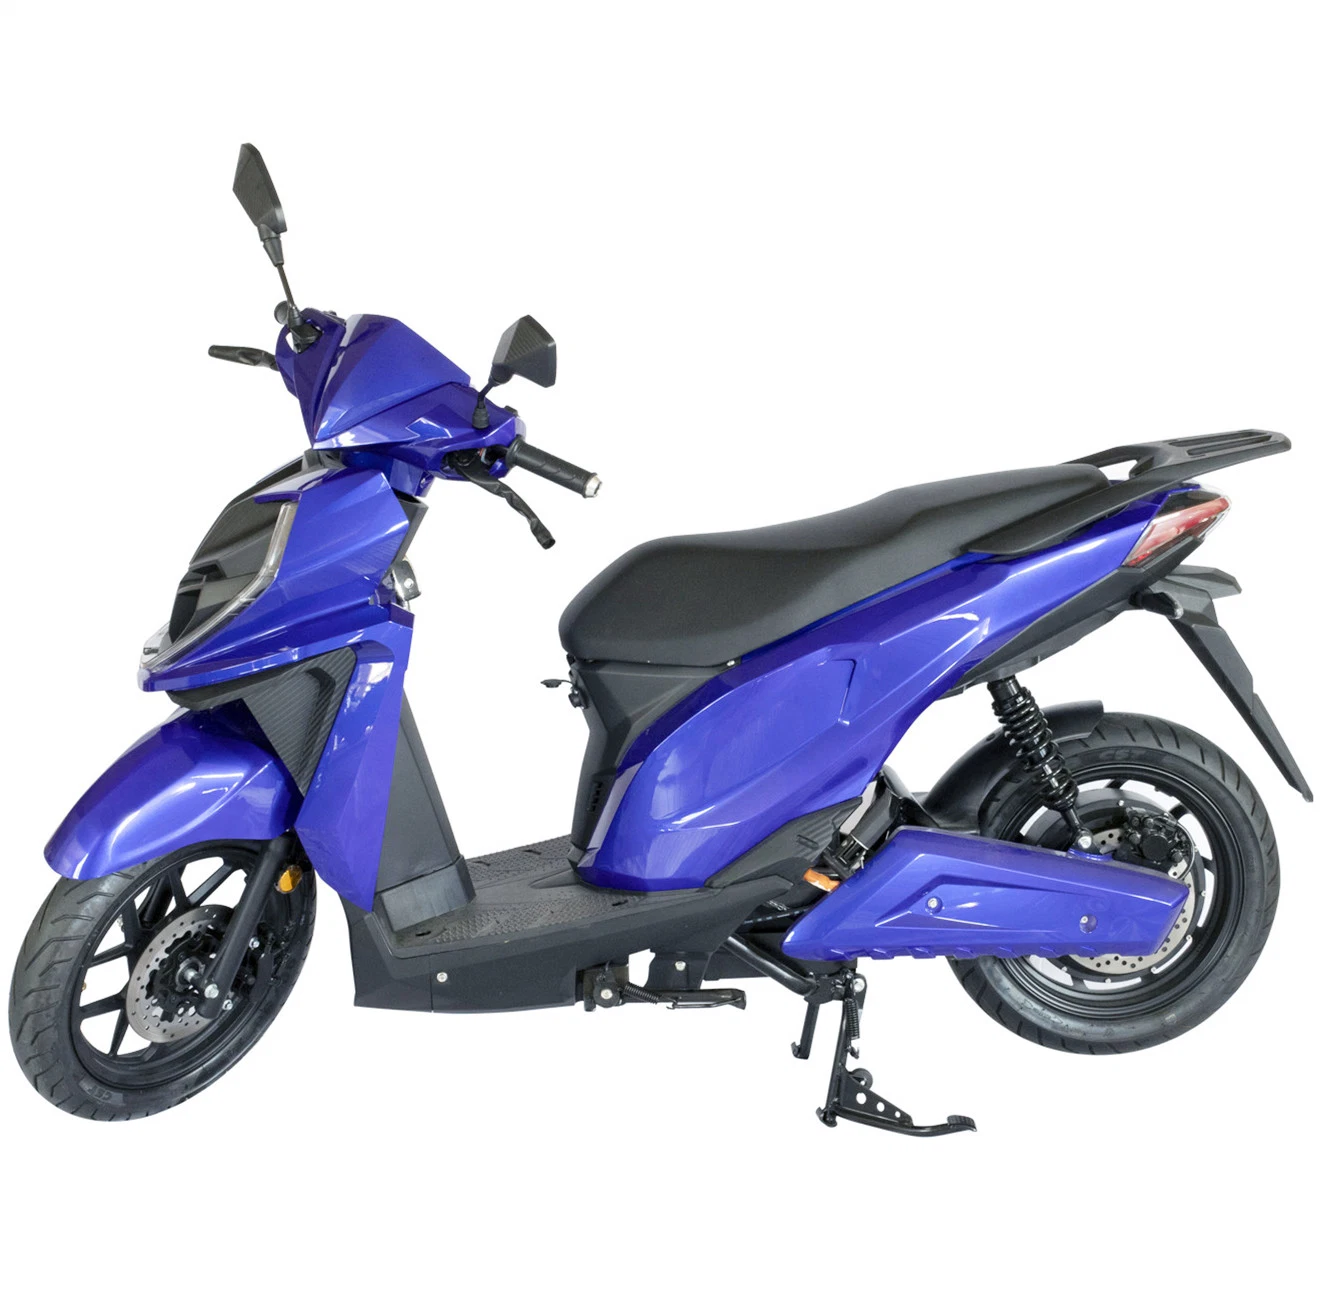 2000 Вт с возможностью горячей замены для взрослых с электроприводом ATV Quad Bike для продажи/высокая мощность электрического велосипеда мотоциклов